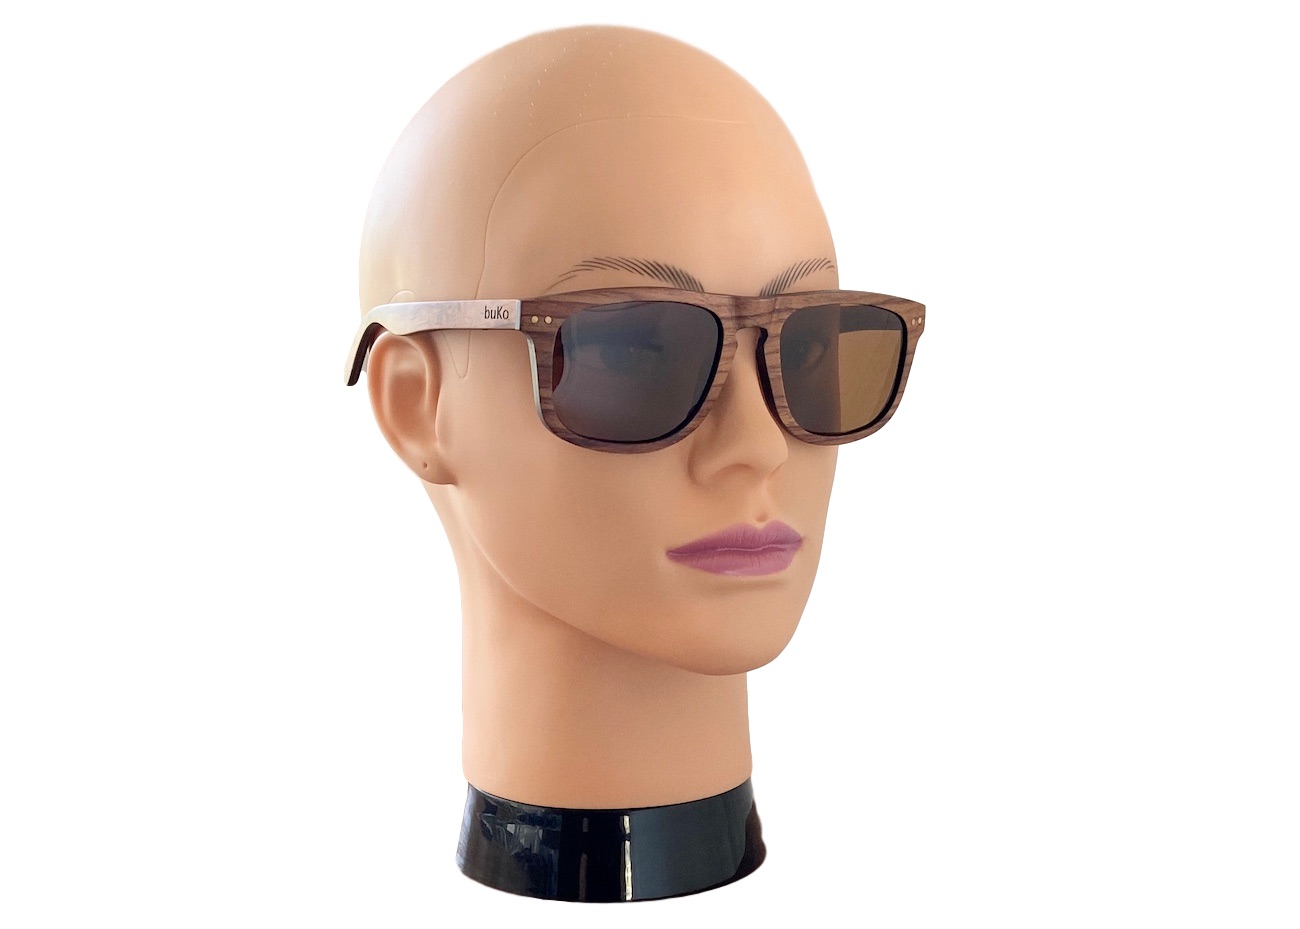 Ranger wooden sunglasses on woman model